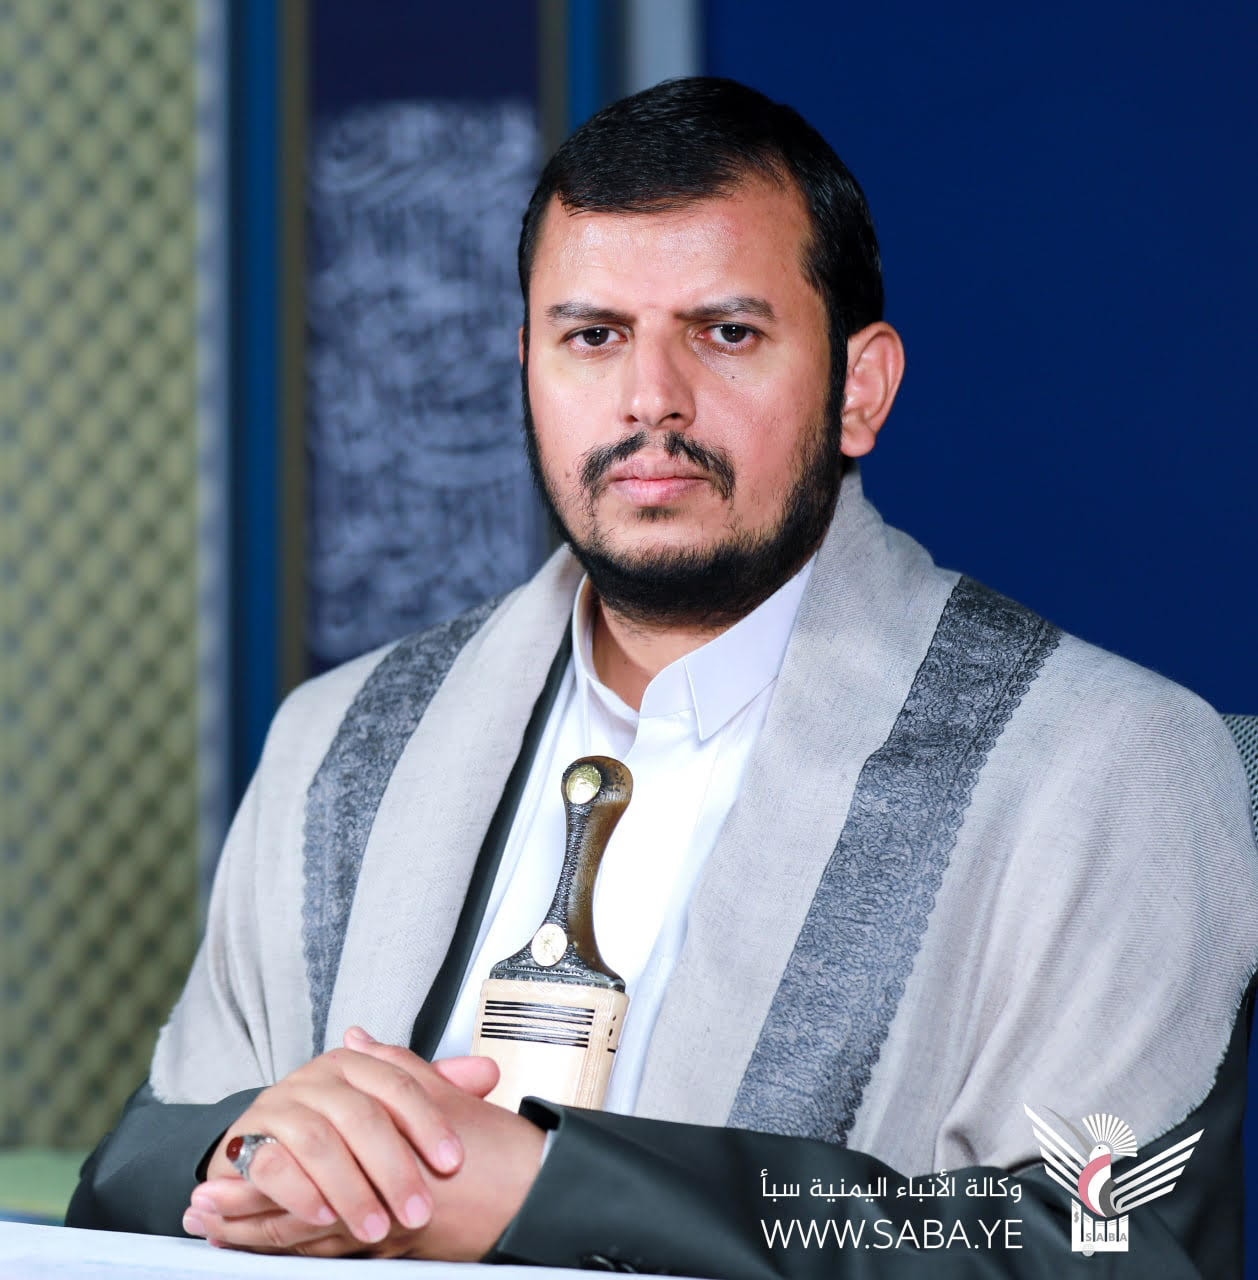 Revolutionsführer bestätigt Festigkeit der jemenitischen Position, sich an Rechte des palästinensischen Volkes zu halten und heiligen Stätten wiederherzustellen